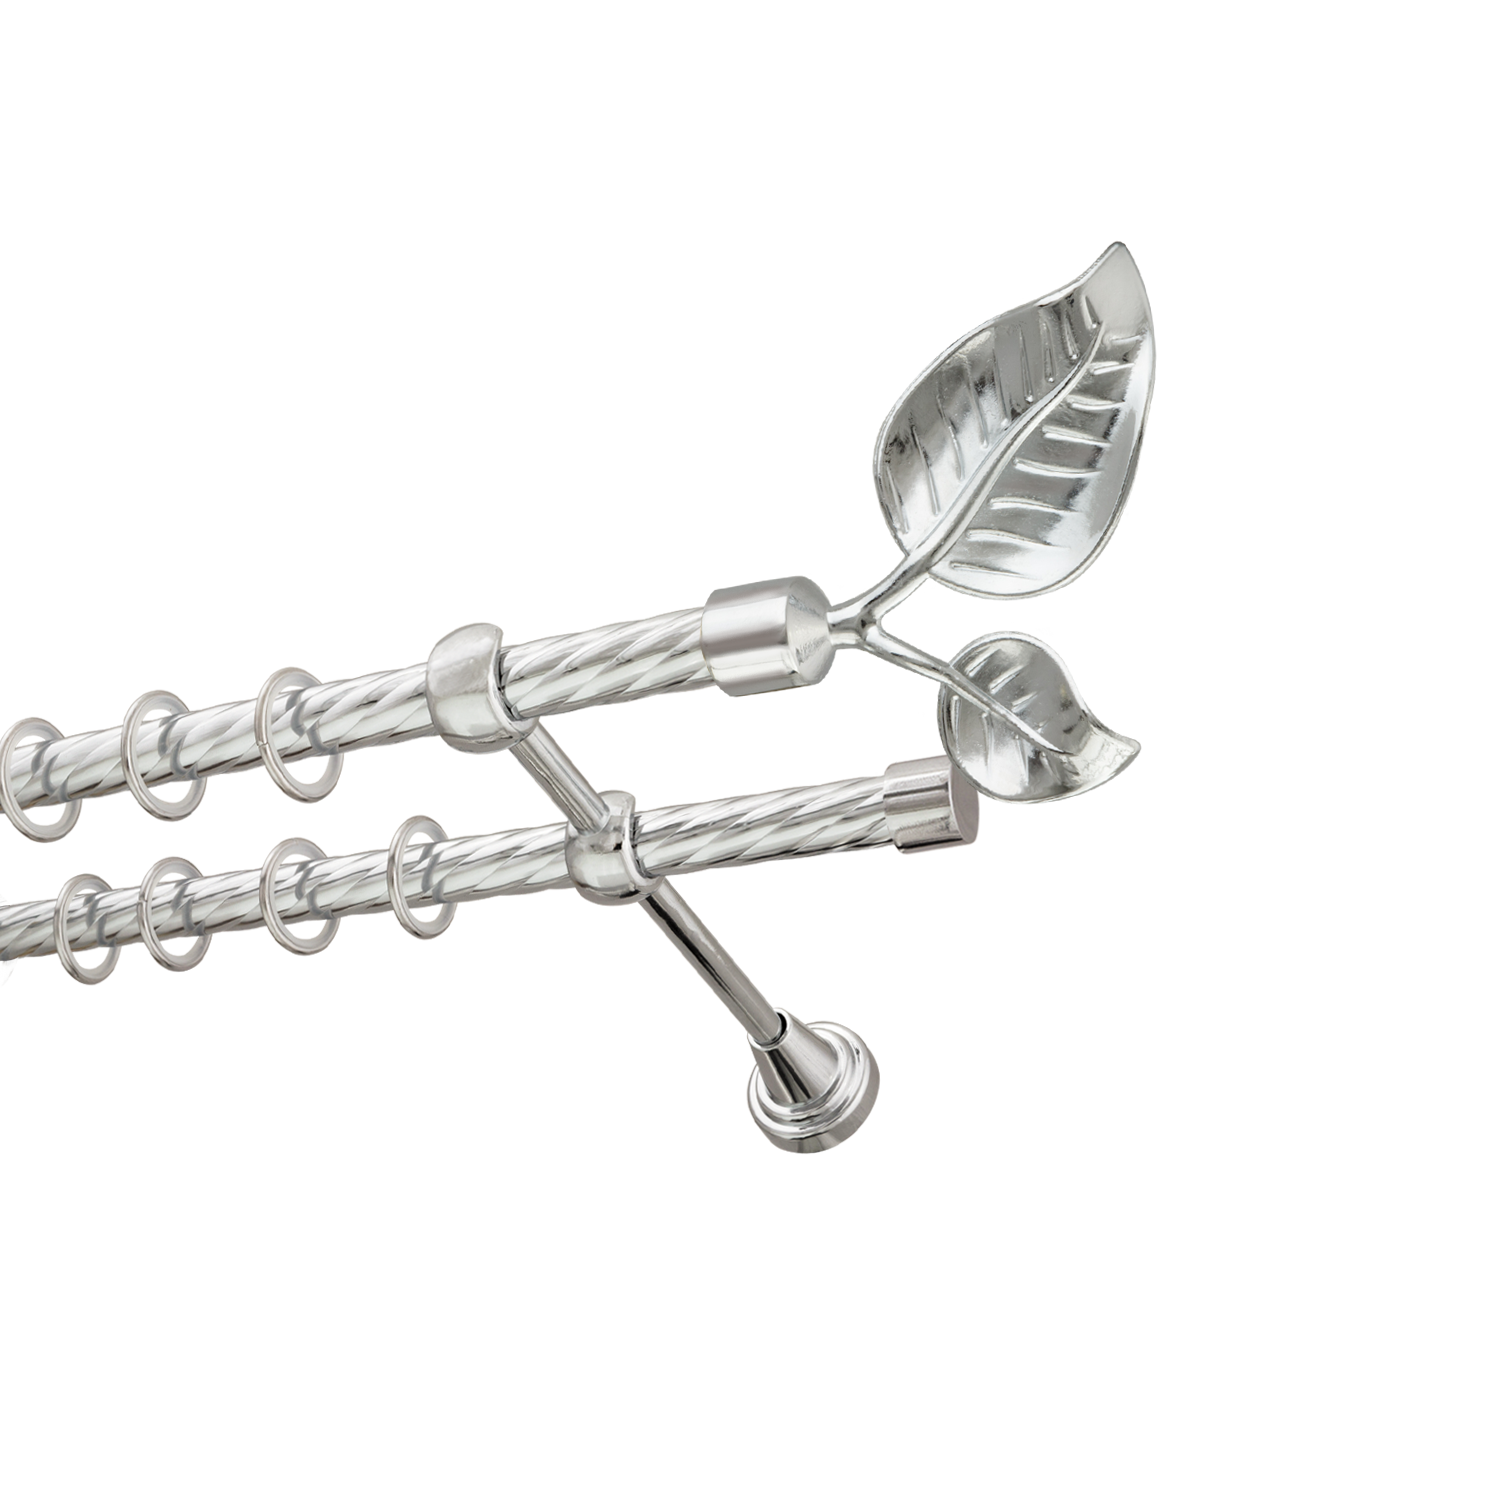 Металлический карниз для штор Тропик, двухрядный 16/16 мм, серебро, витая штанга, длина 240 см - фото Wikidecor.ru